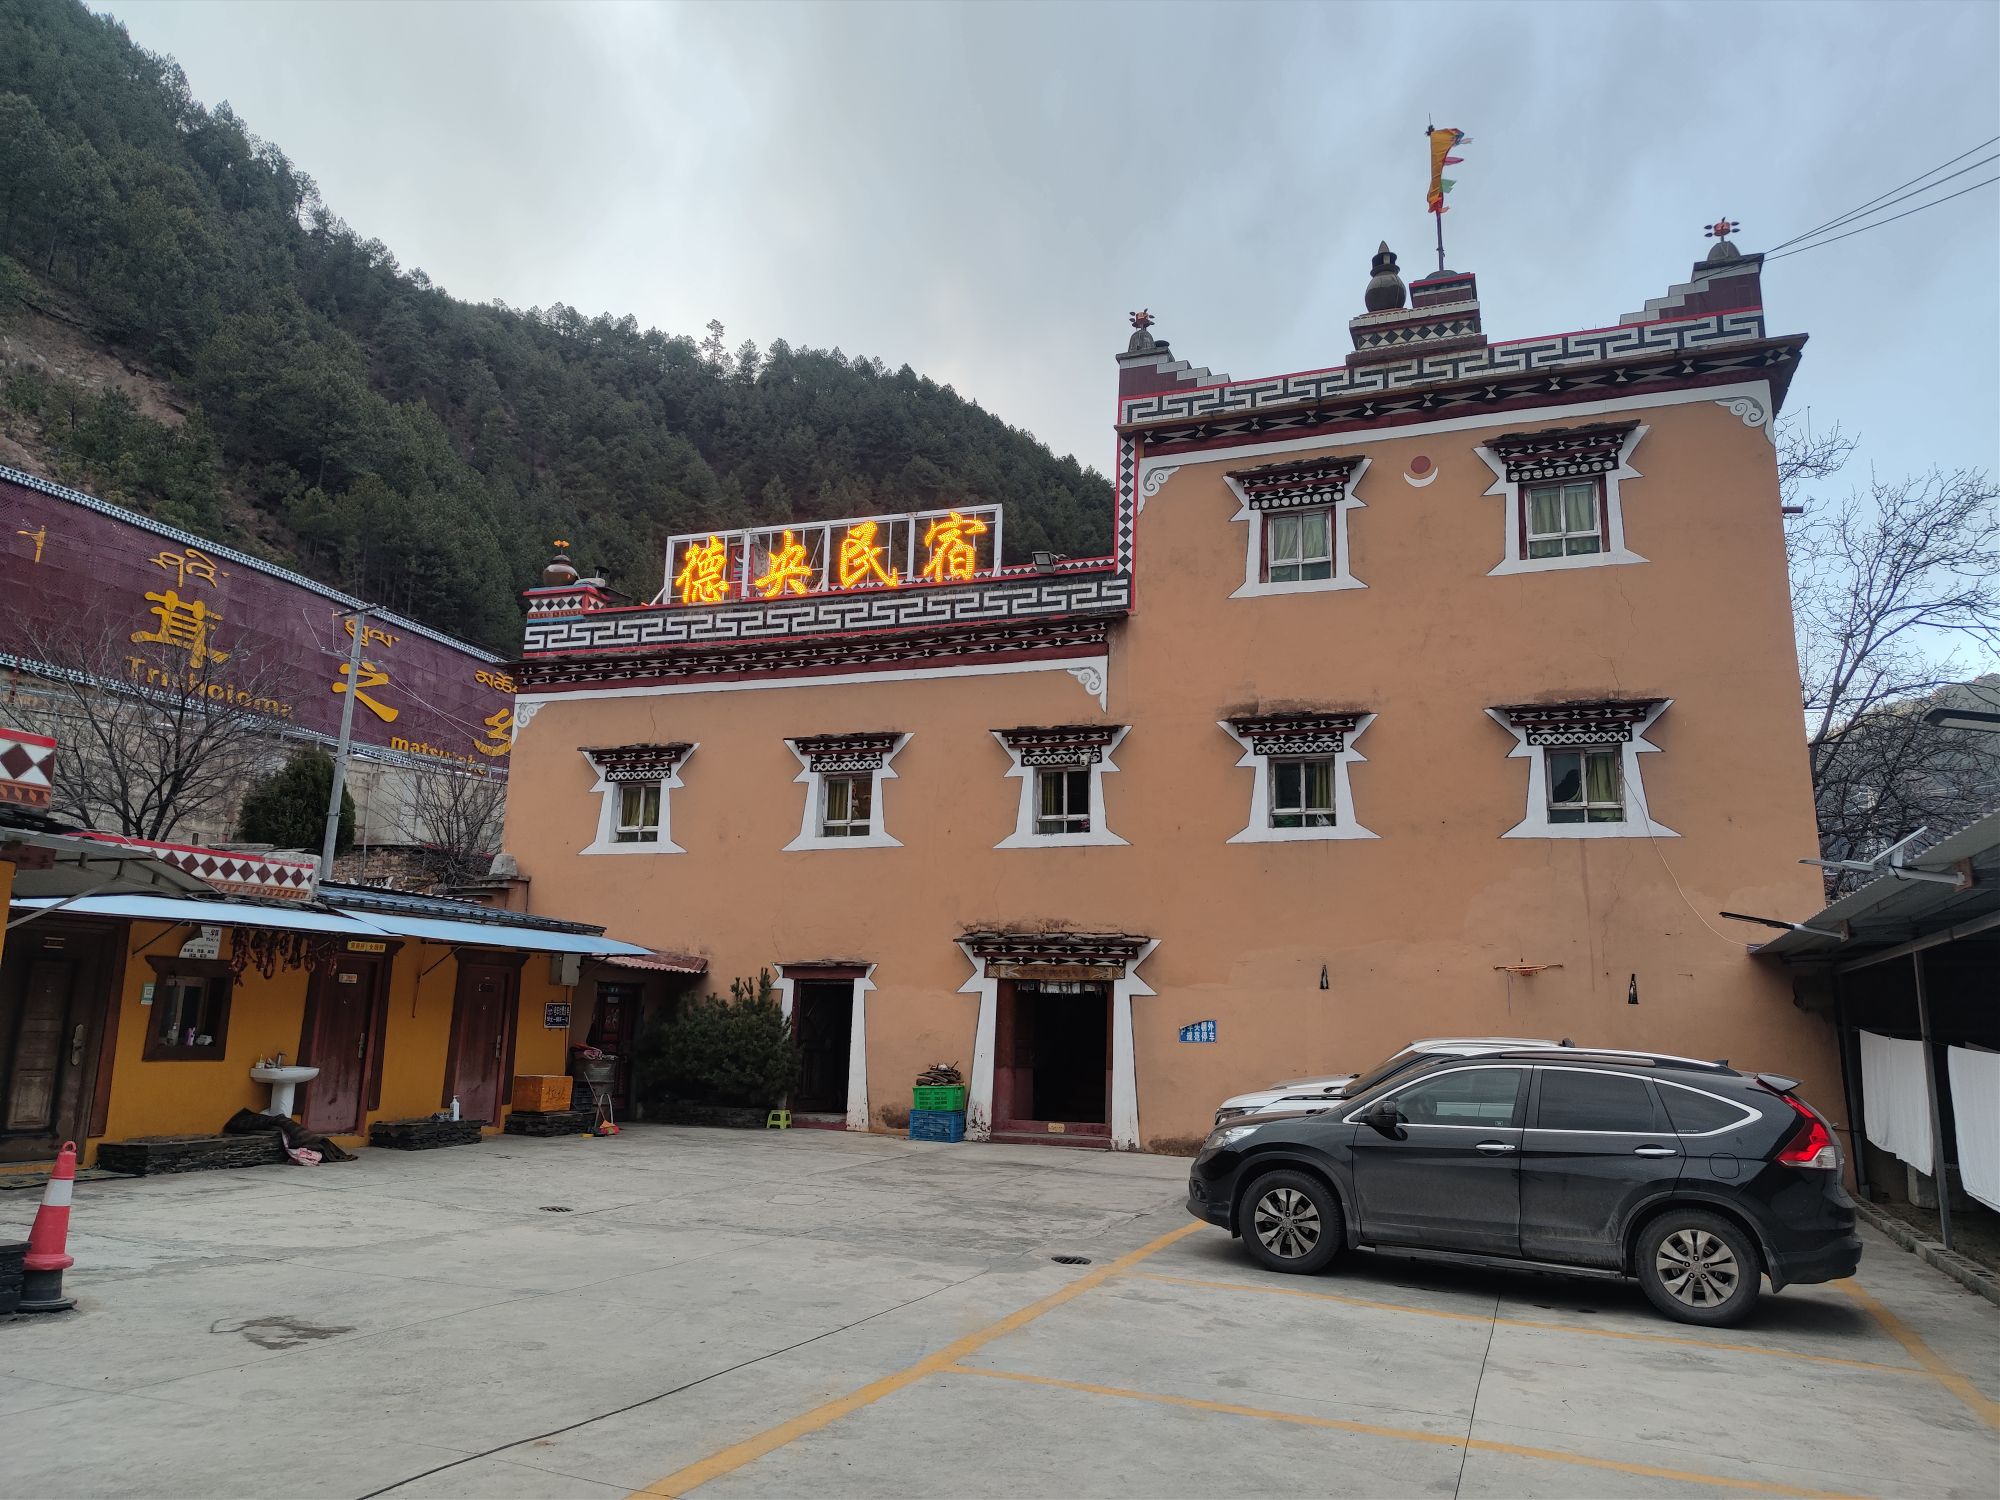 老板热情好客，招待周到。民宿装修很有藏族特色，床够大。在318上，位于雅江县城前面一点点，院子停车方